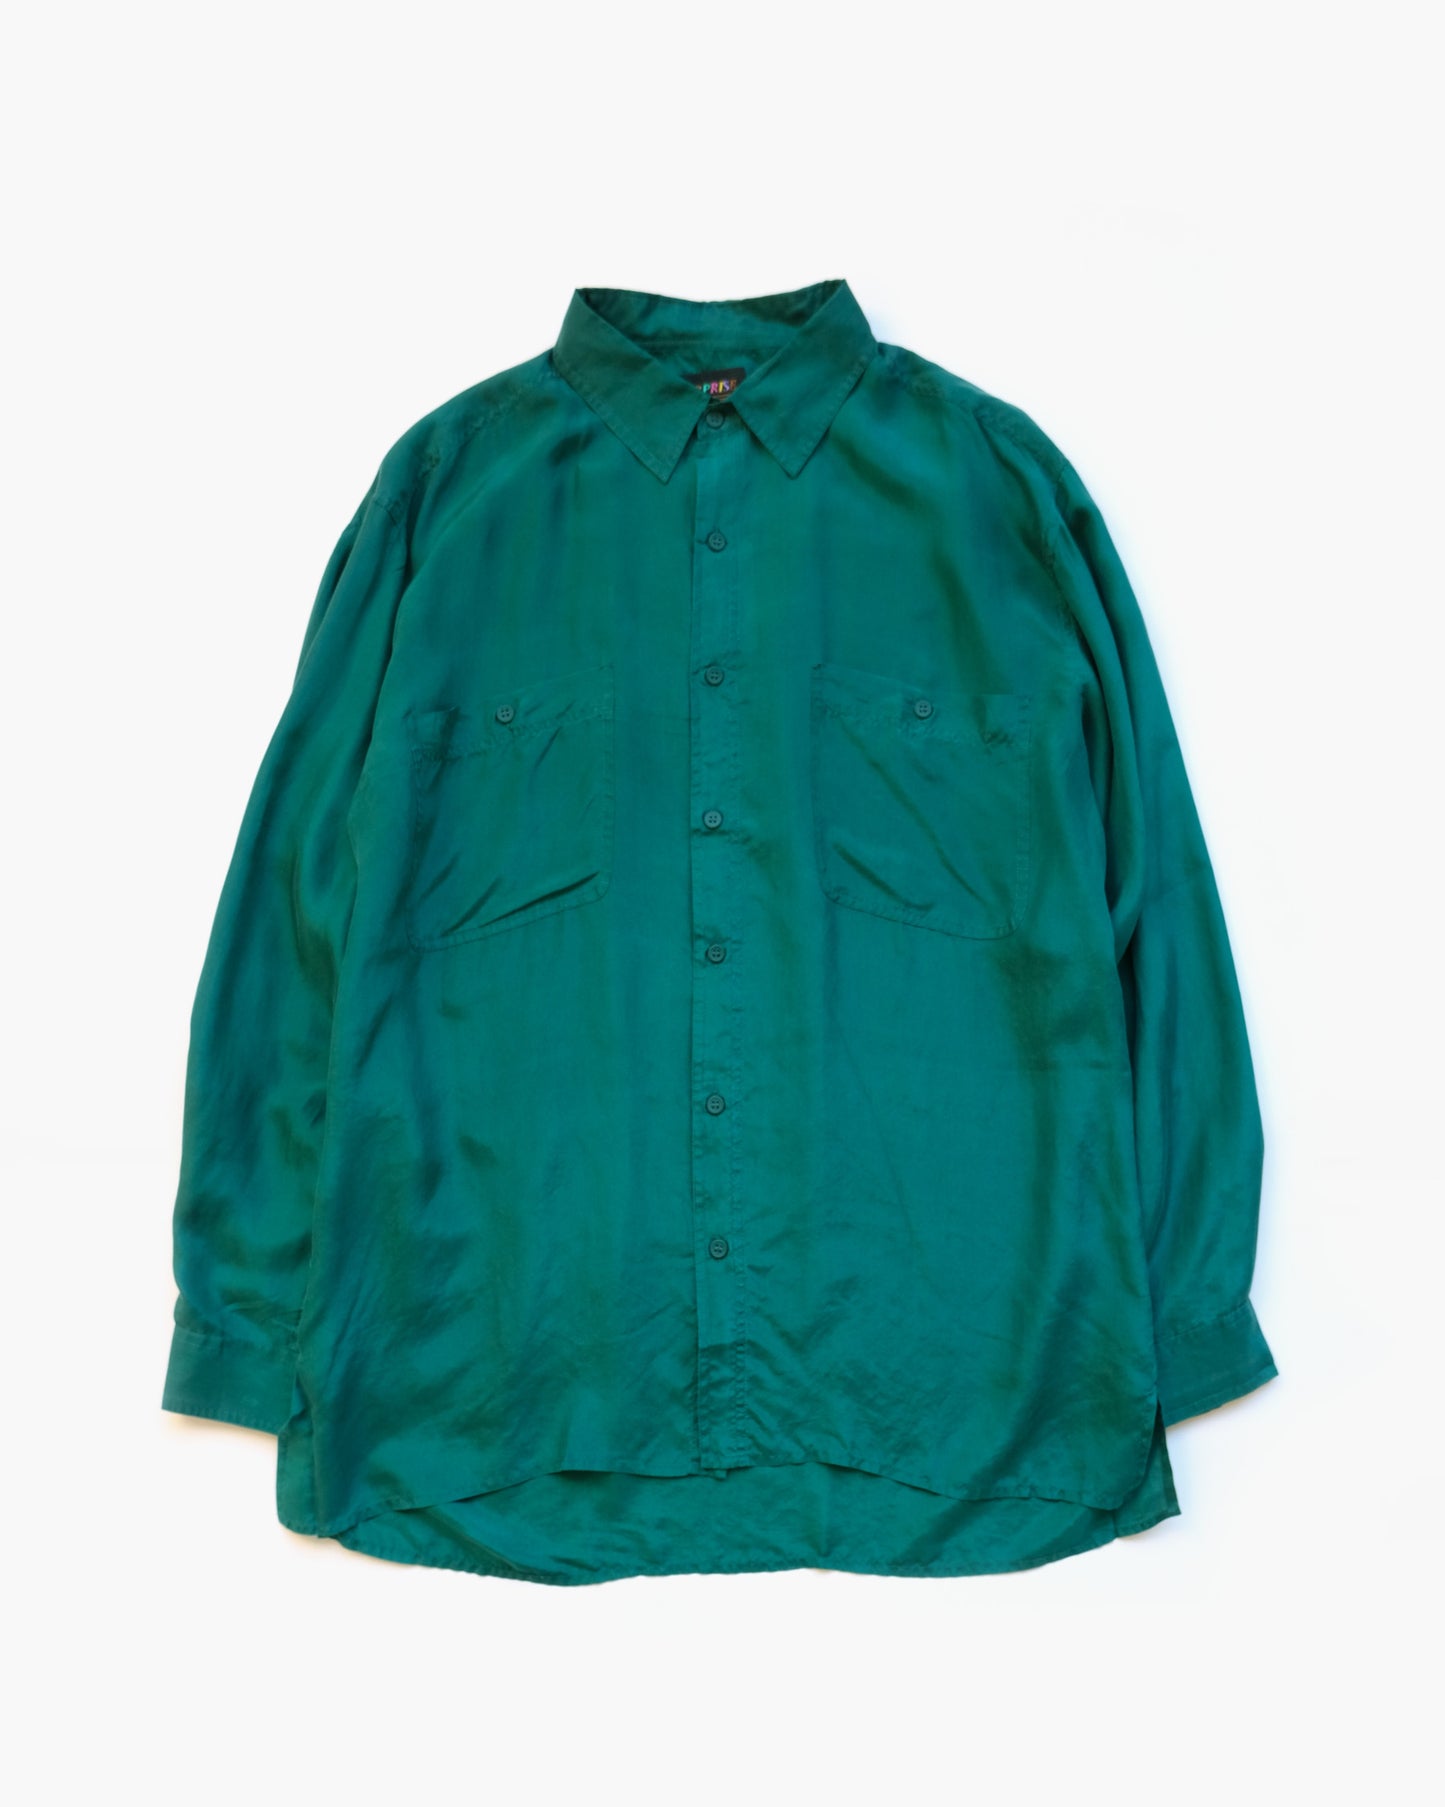 N.O.S  100% Silk Shirts - Green